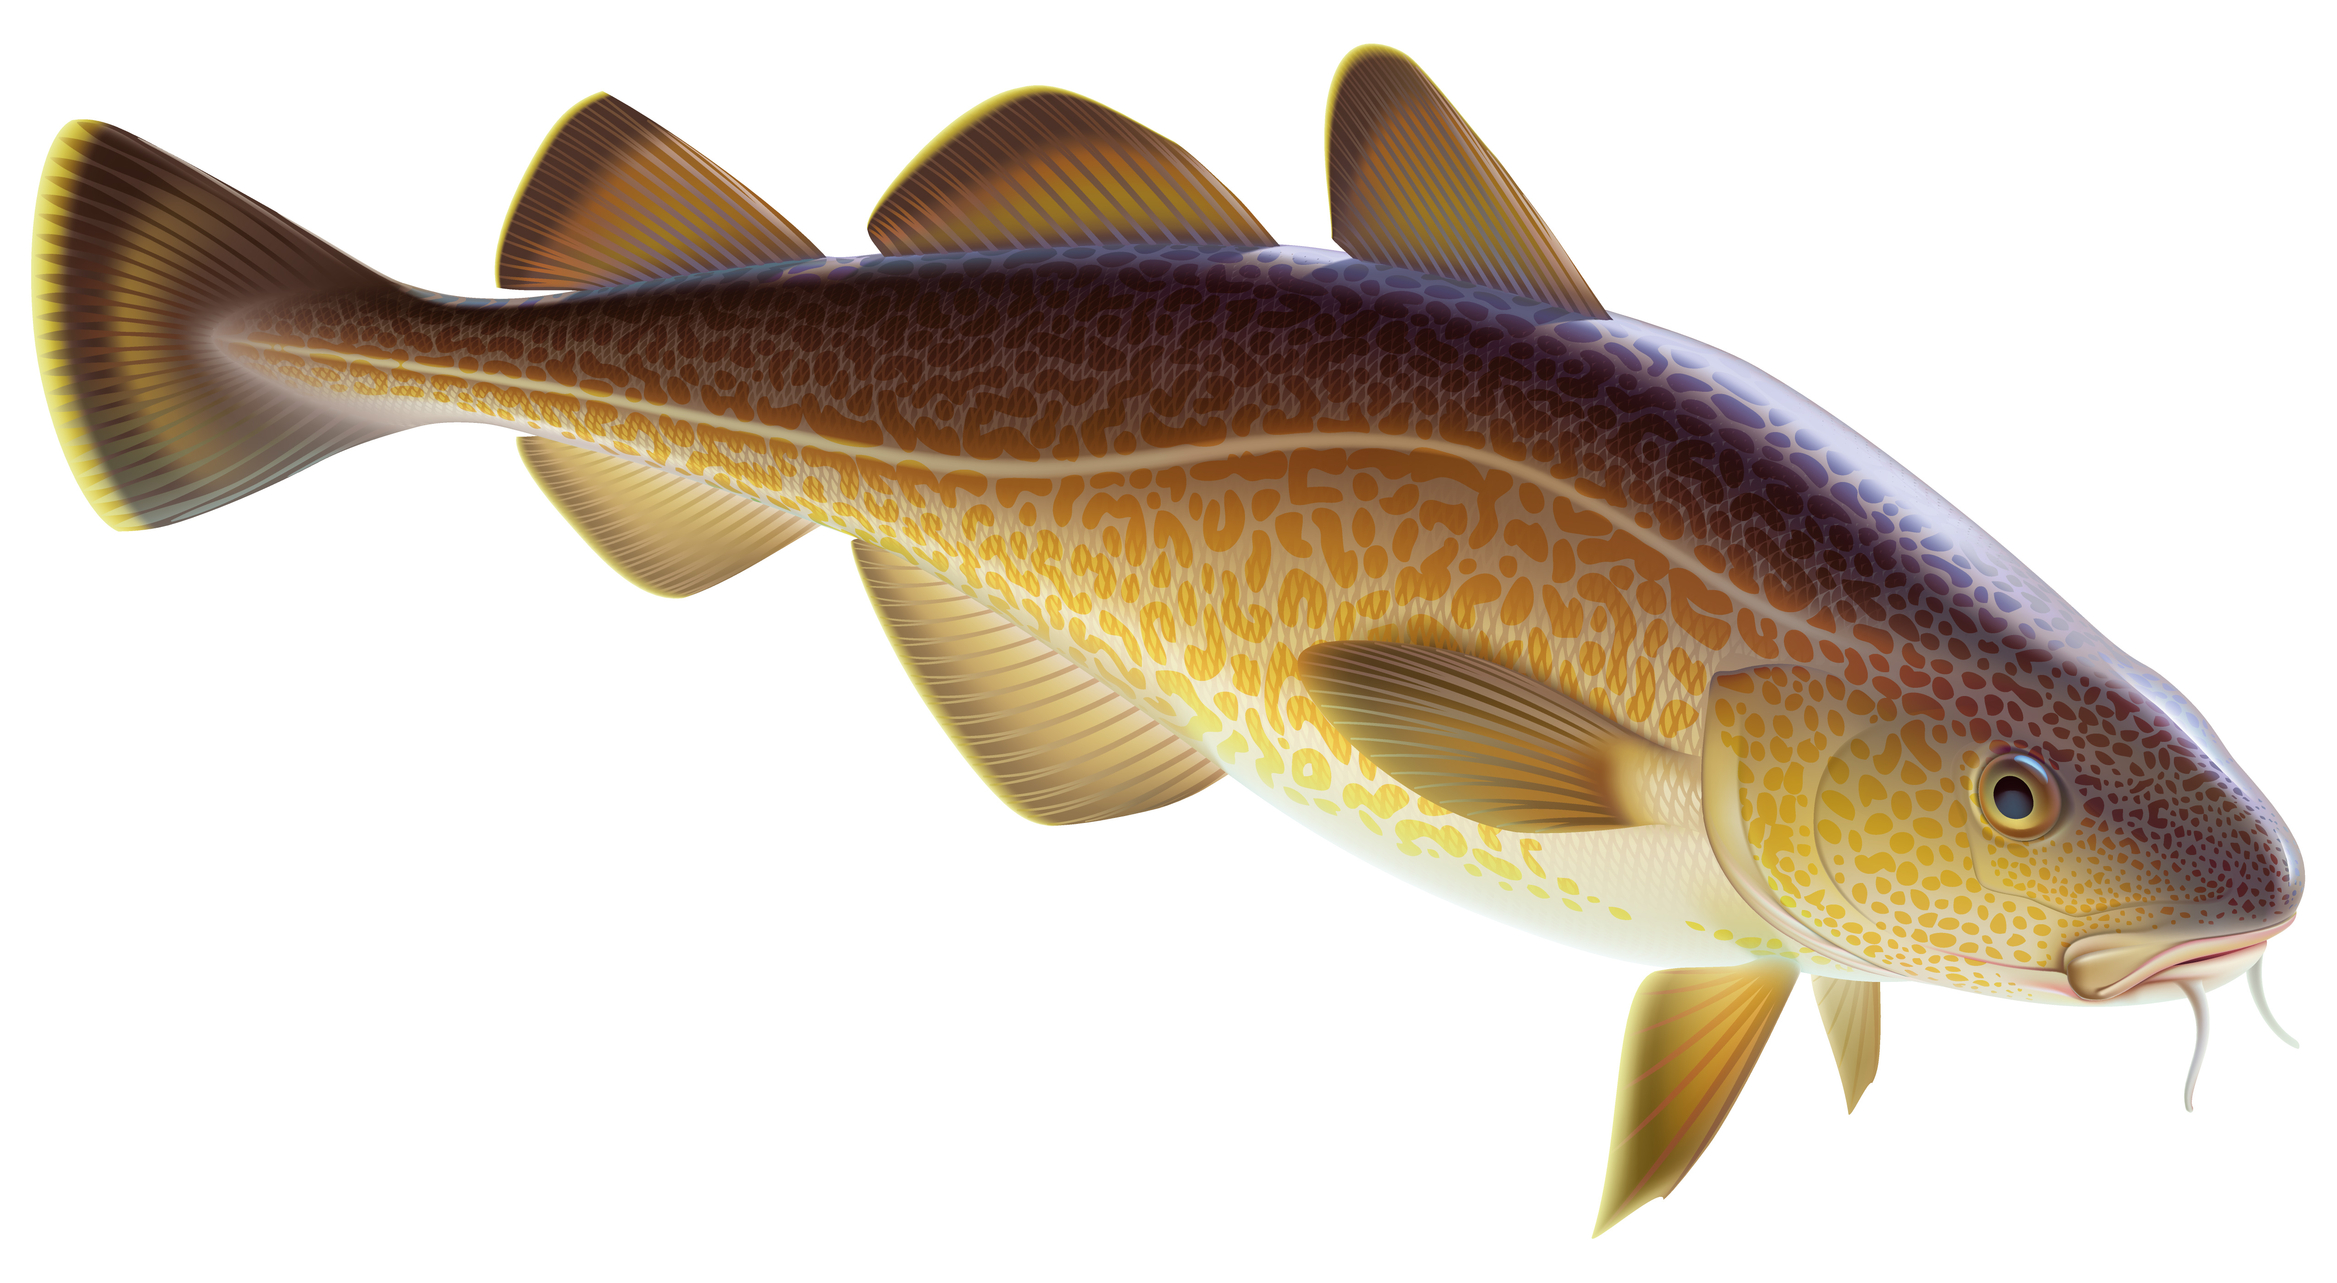 Cod; cod or Alaska cod